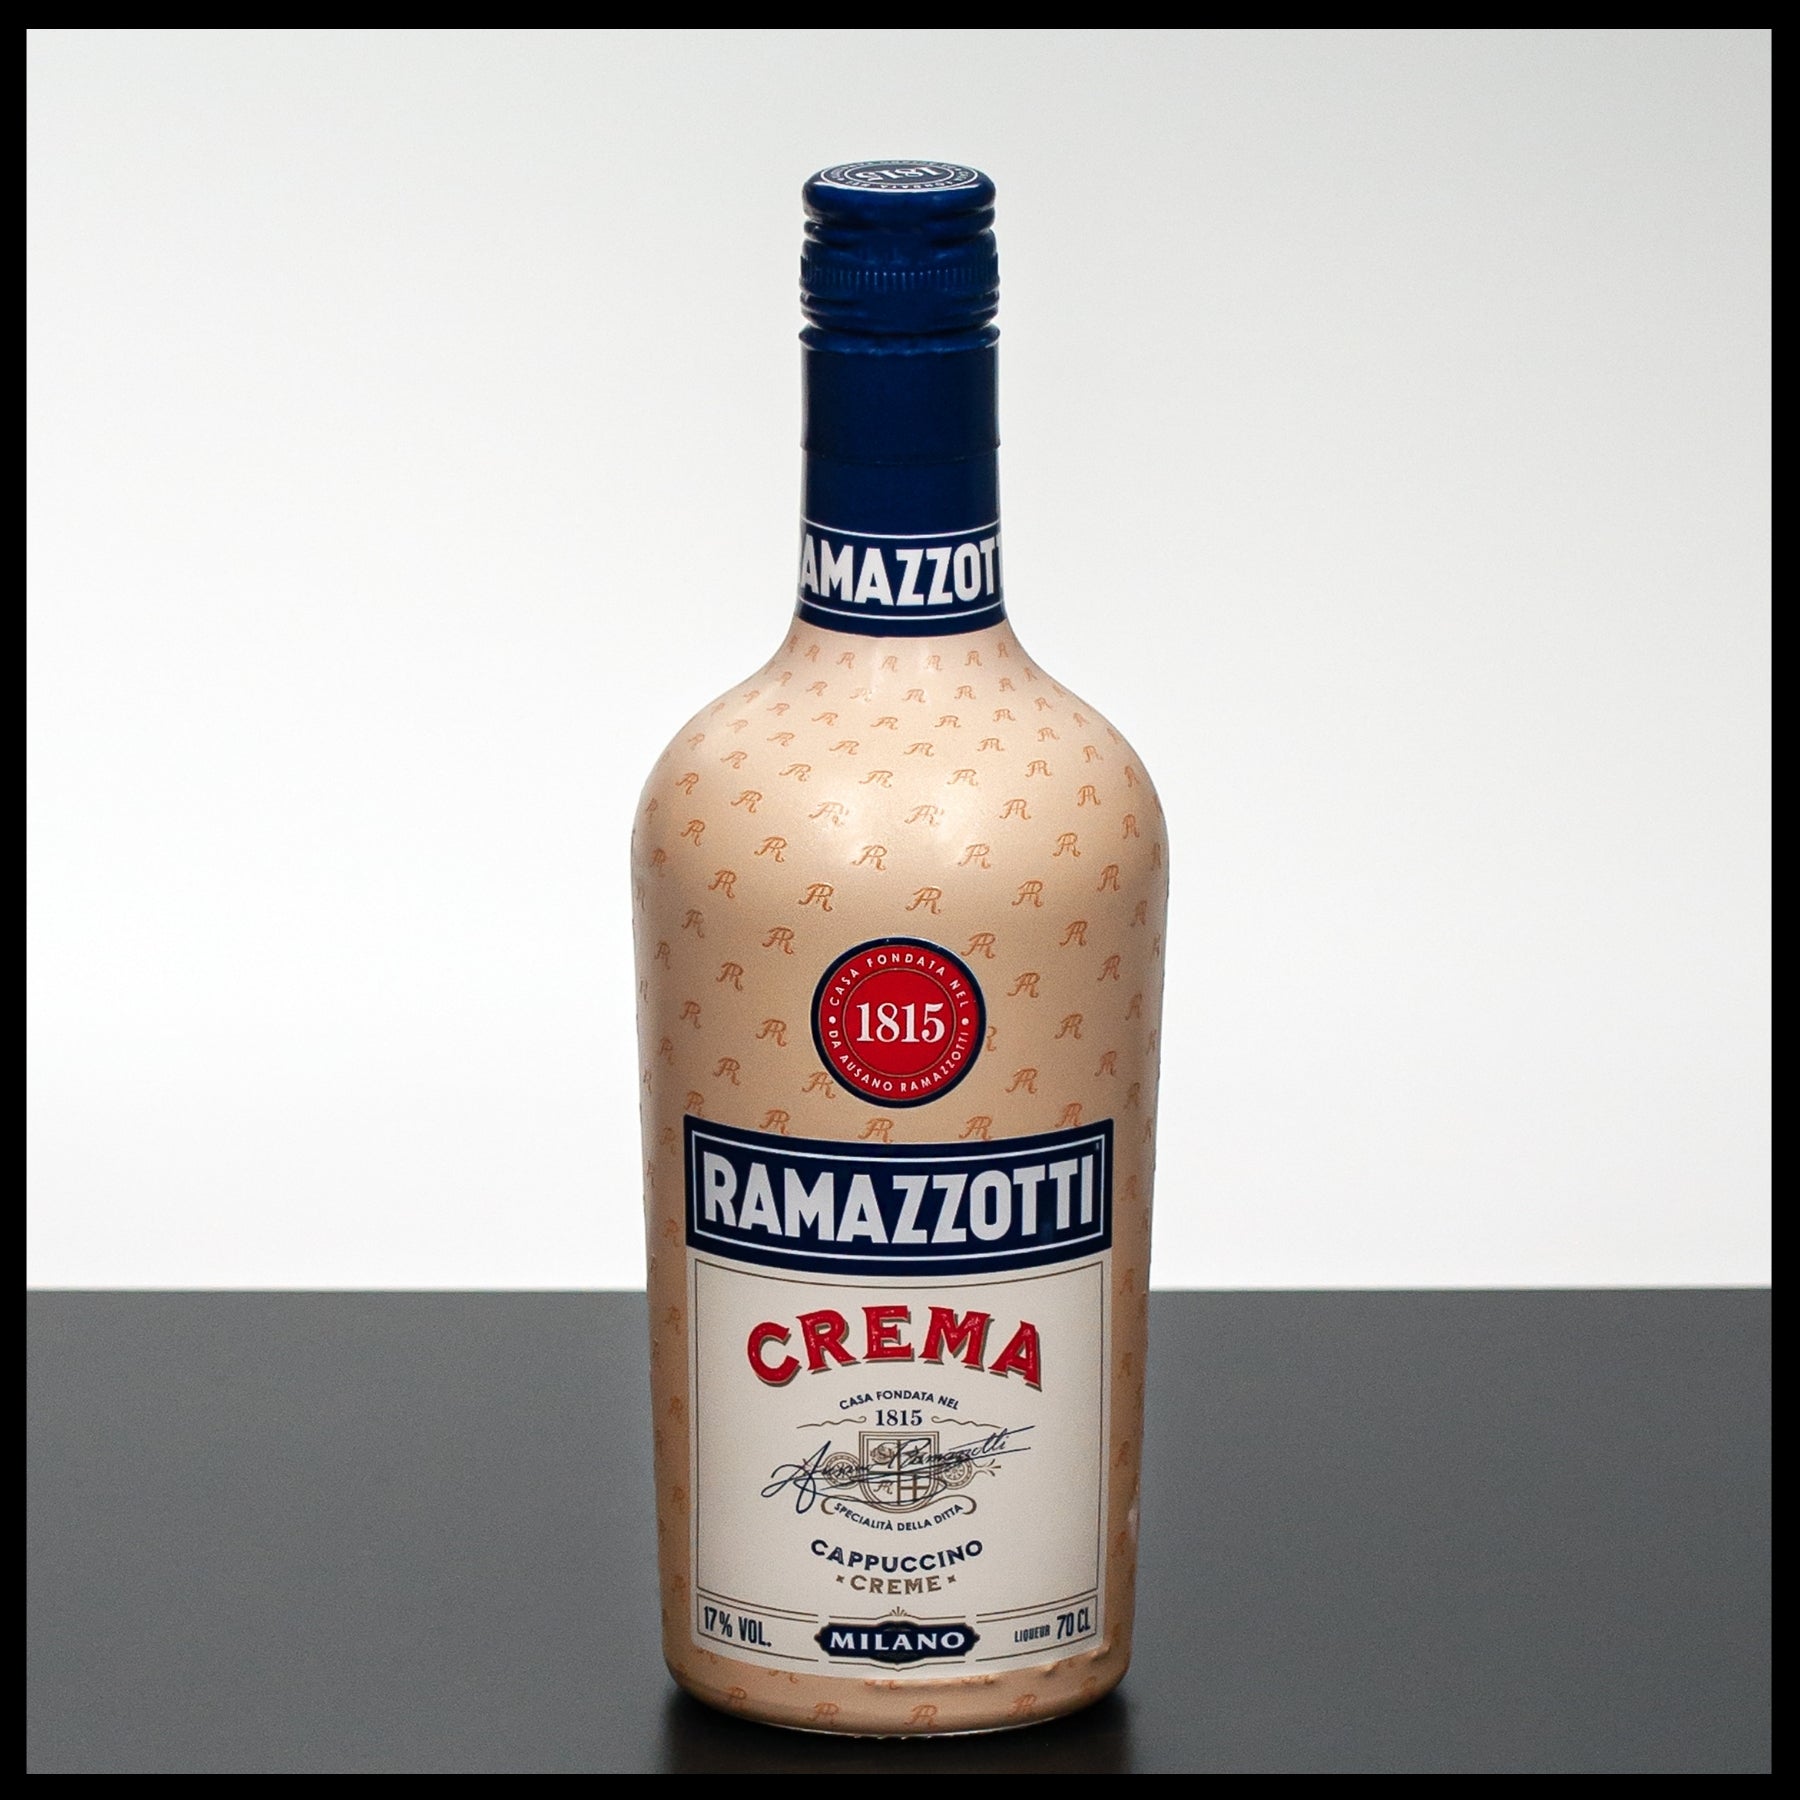 17% Ramazzotti - Cappuccino Creme Crema 0,7L